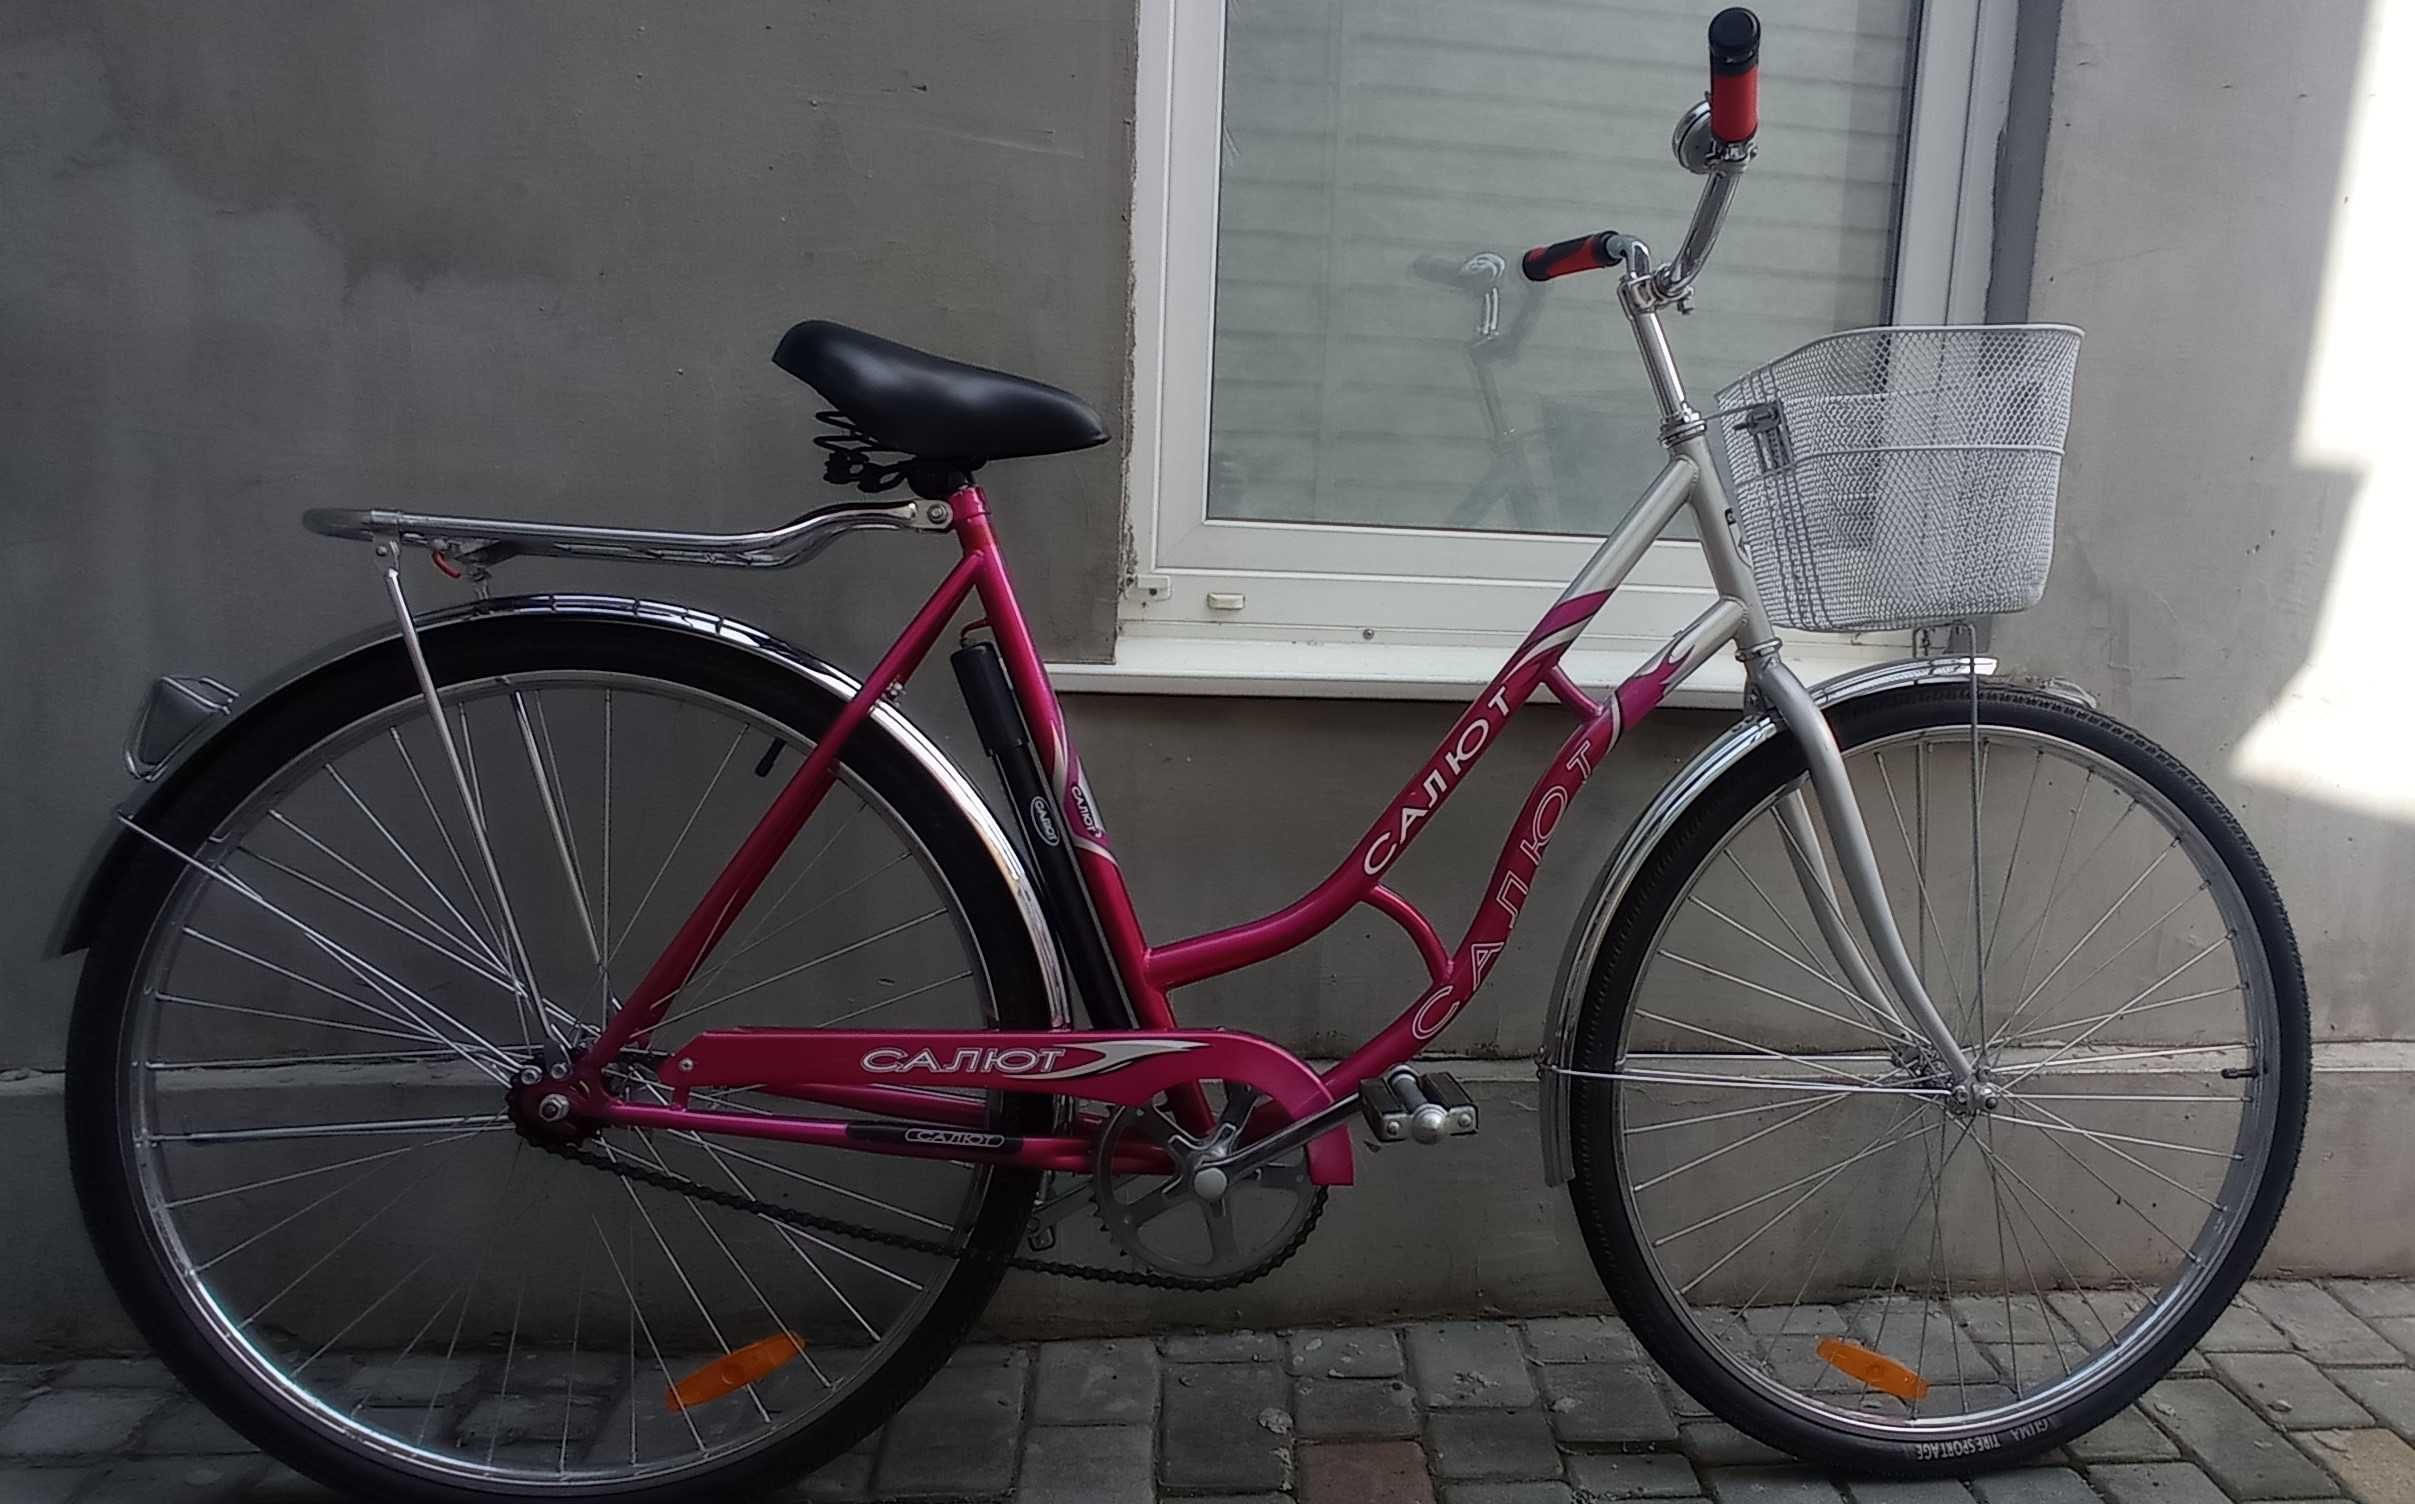 Дамский дорожный прогулочный велосипед Салют, колеса 28 " с корзинкой